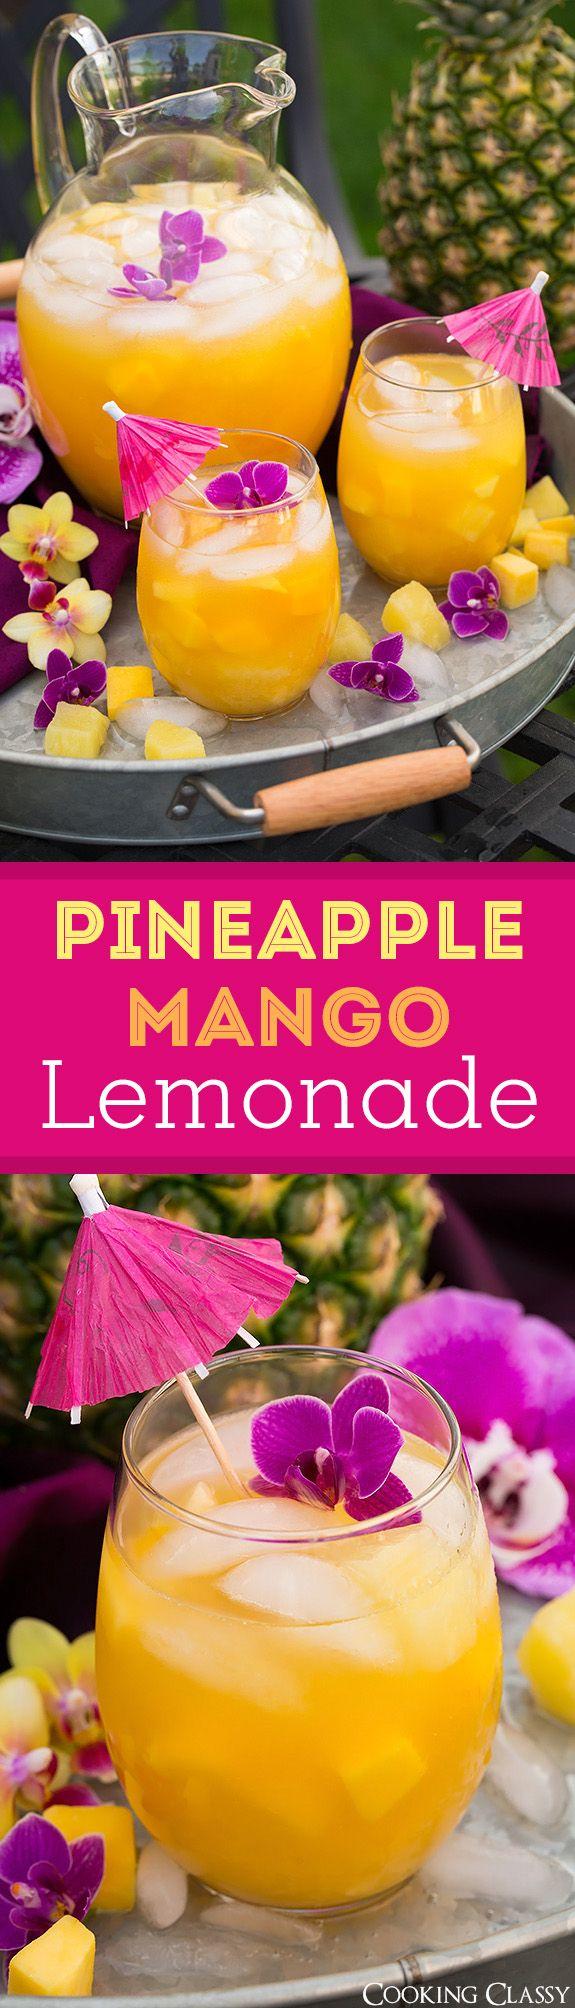 Wedding - Pineapple Mango Lemonade